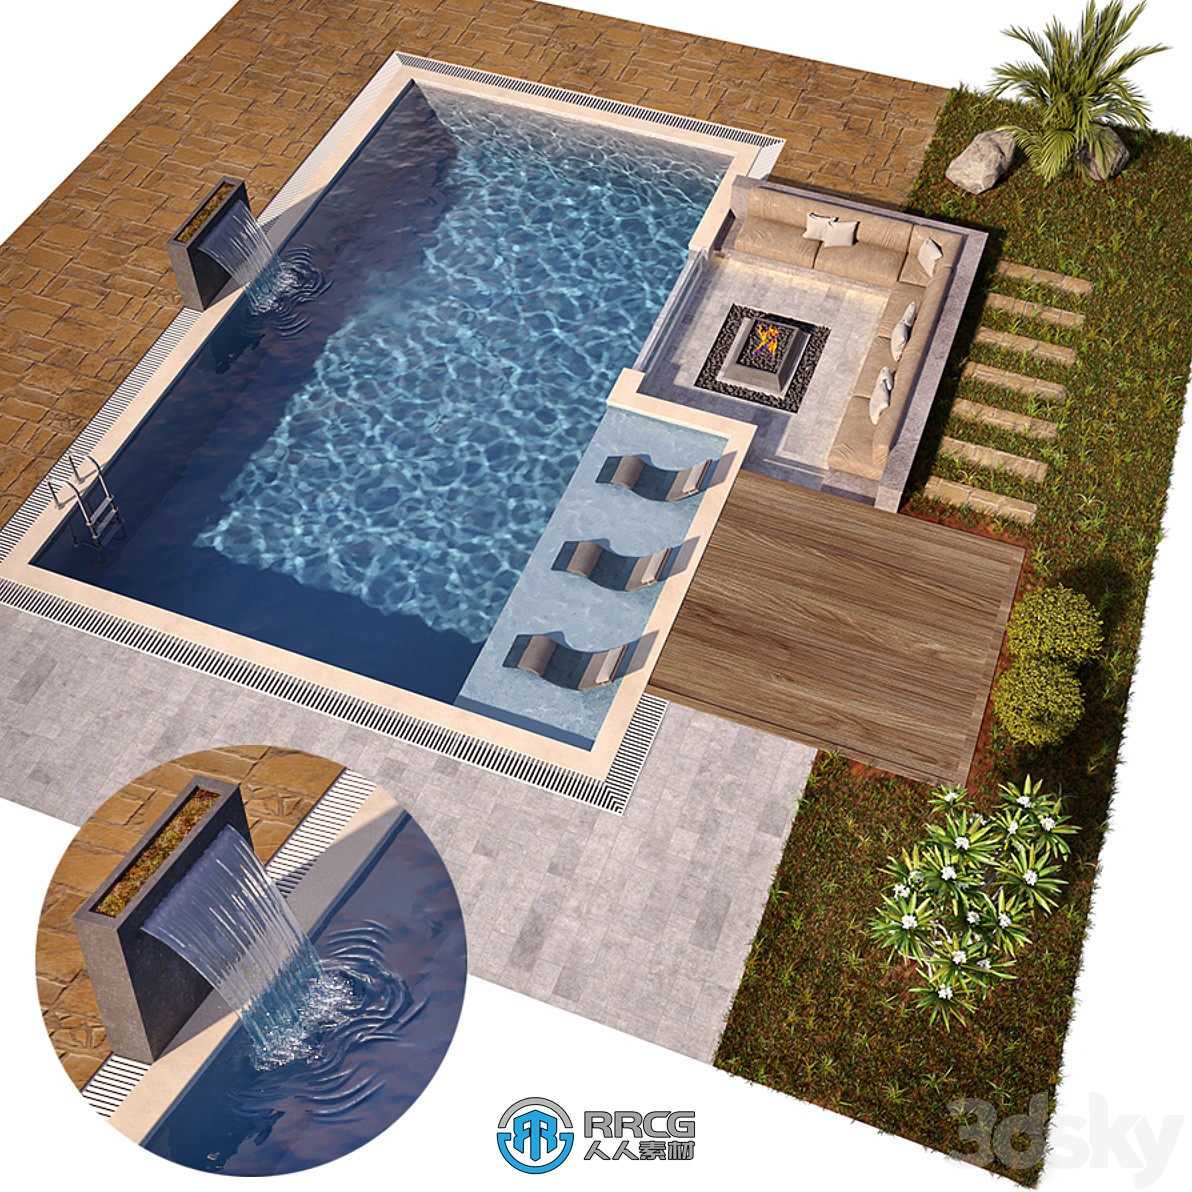 超精细豪华泳池建筑设计3D模型